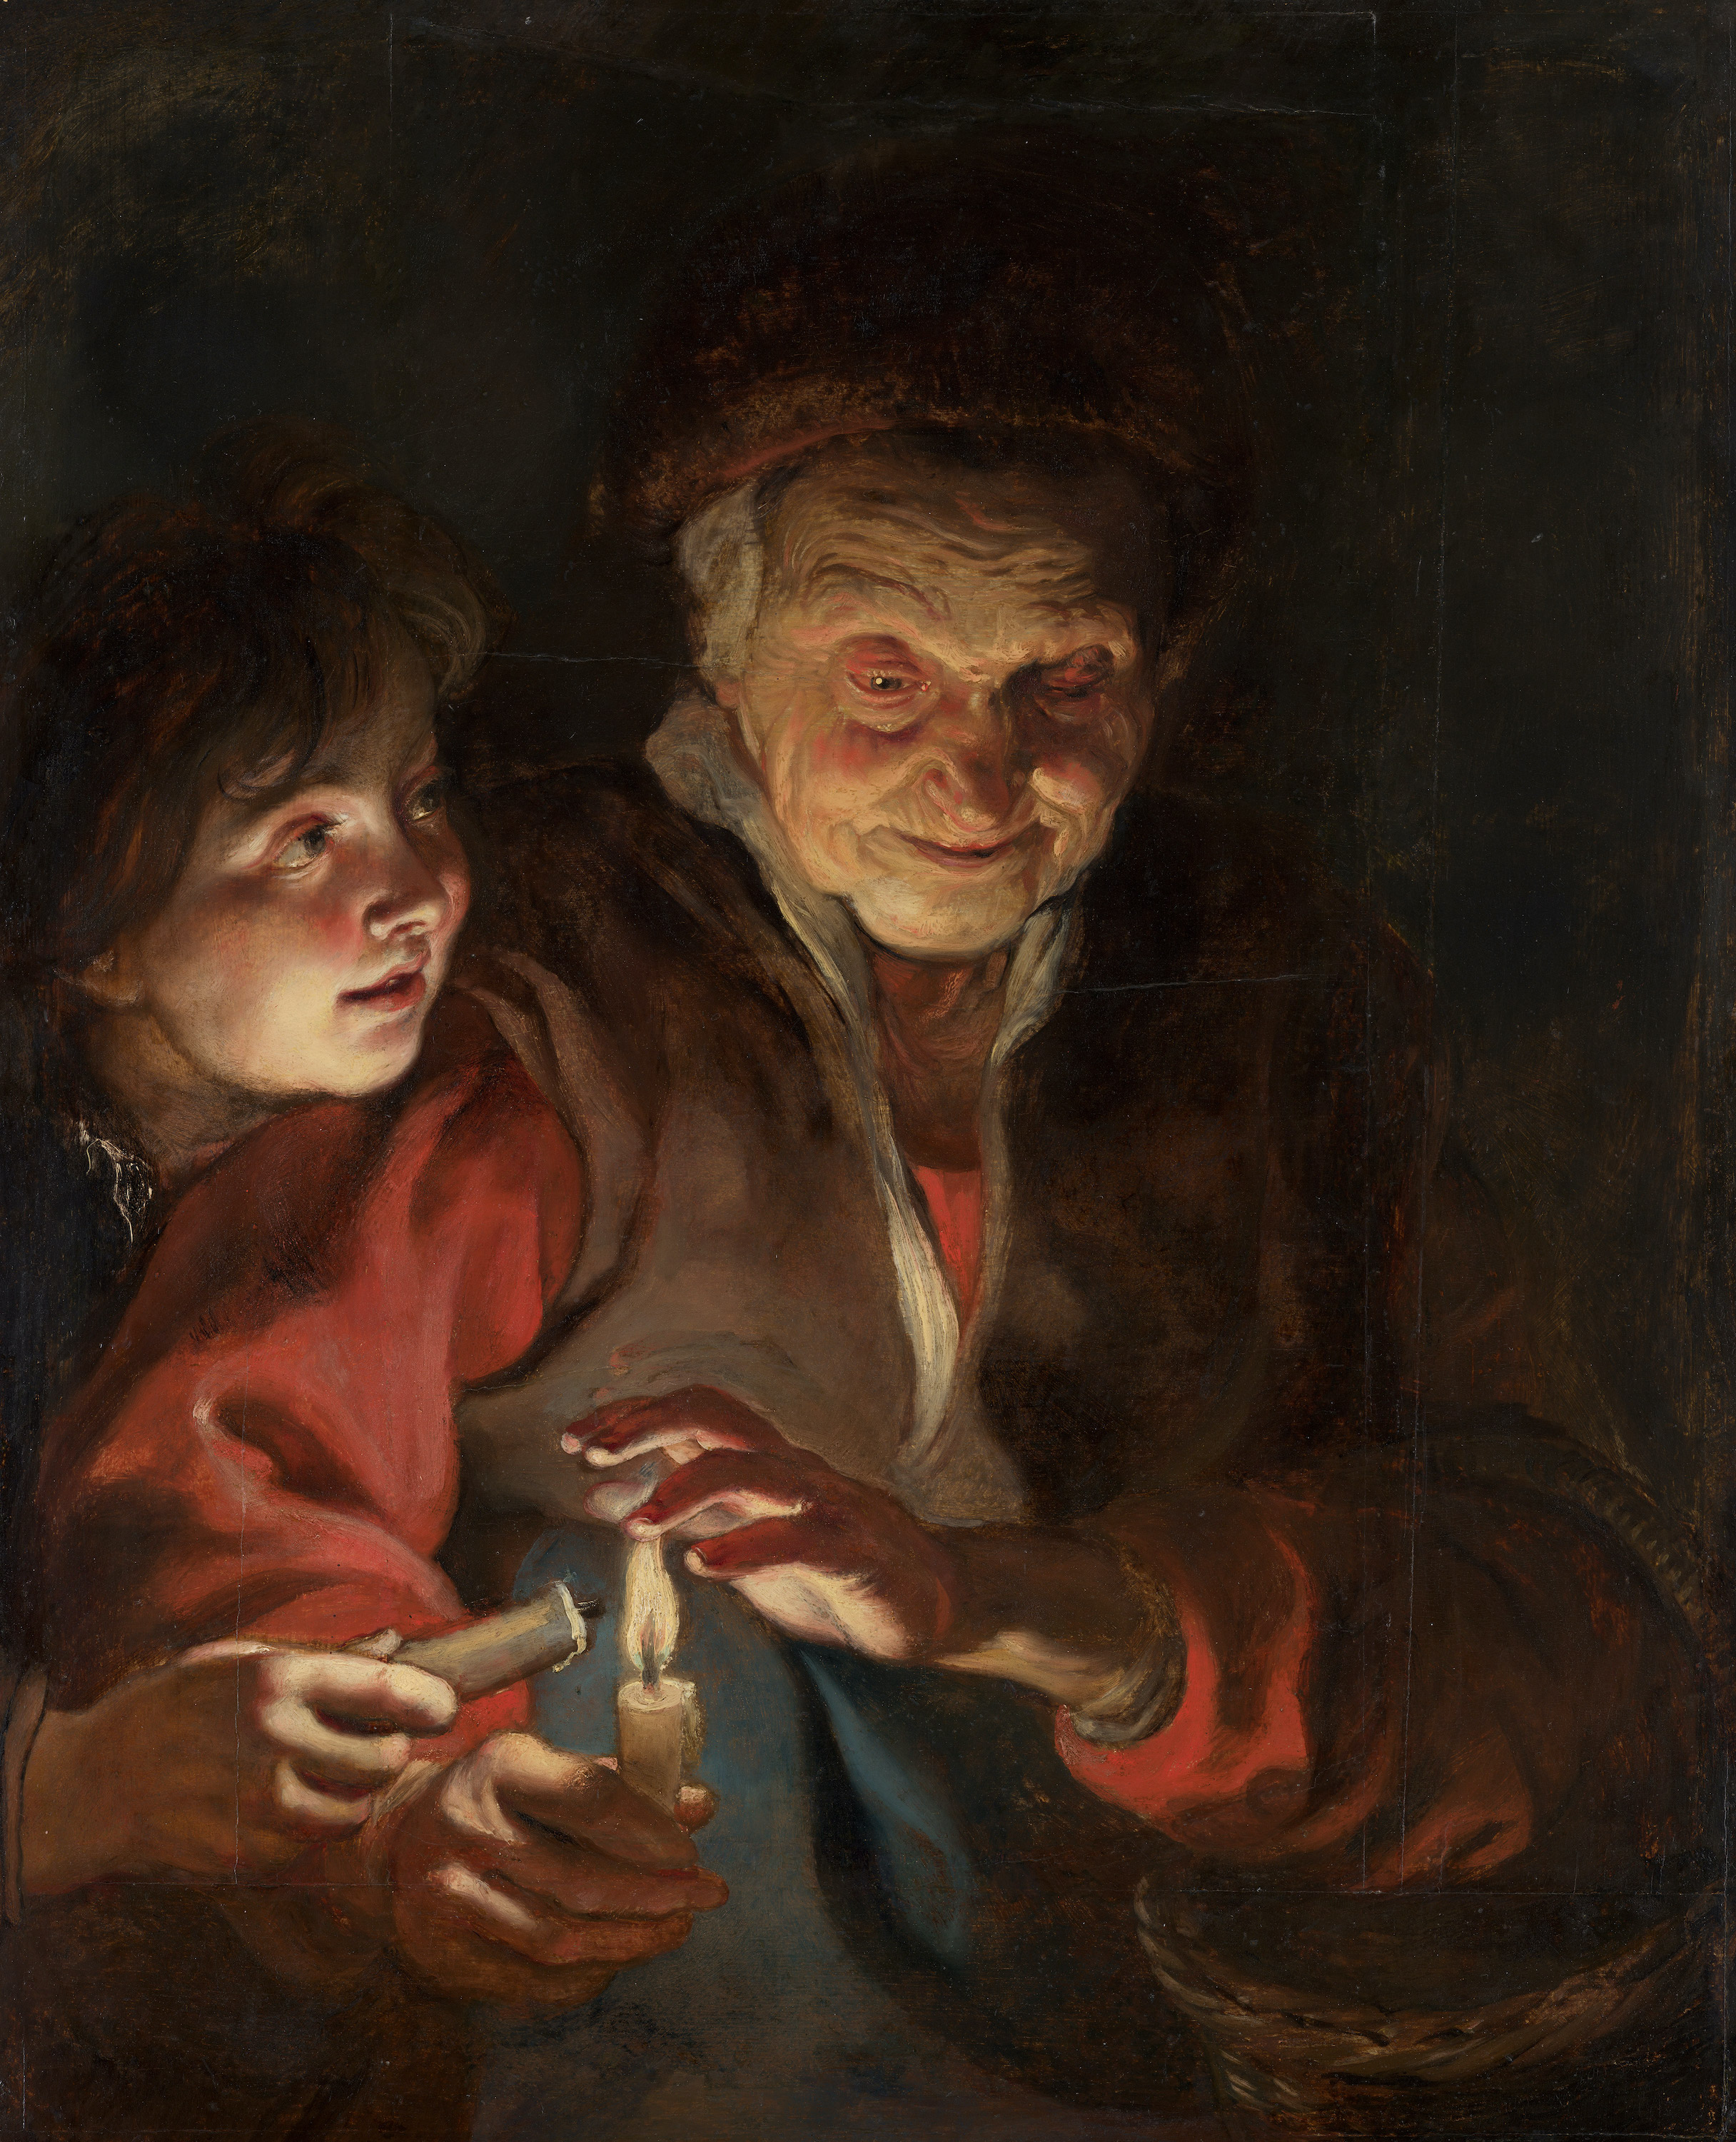 Anciana y niño con velas by Peter Paul Rubens - c. 1616 - 1617 - 77 x 62,5 cm Mauritshuis, La Haya